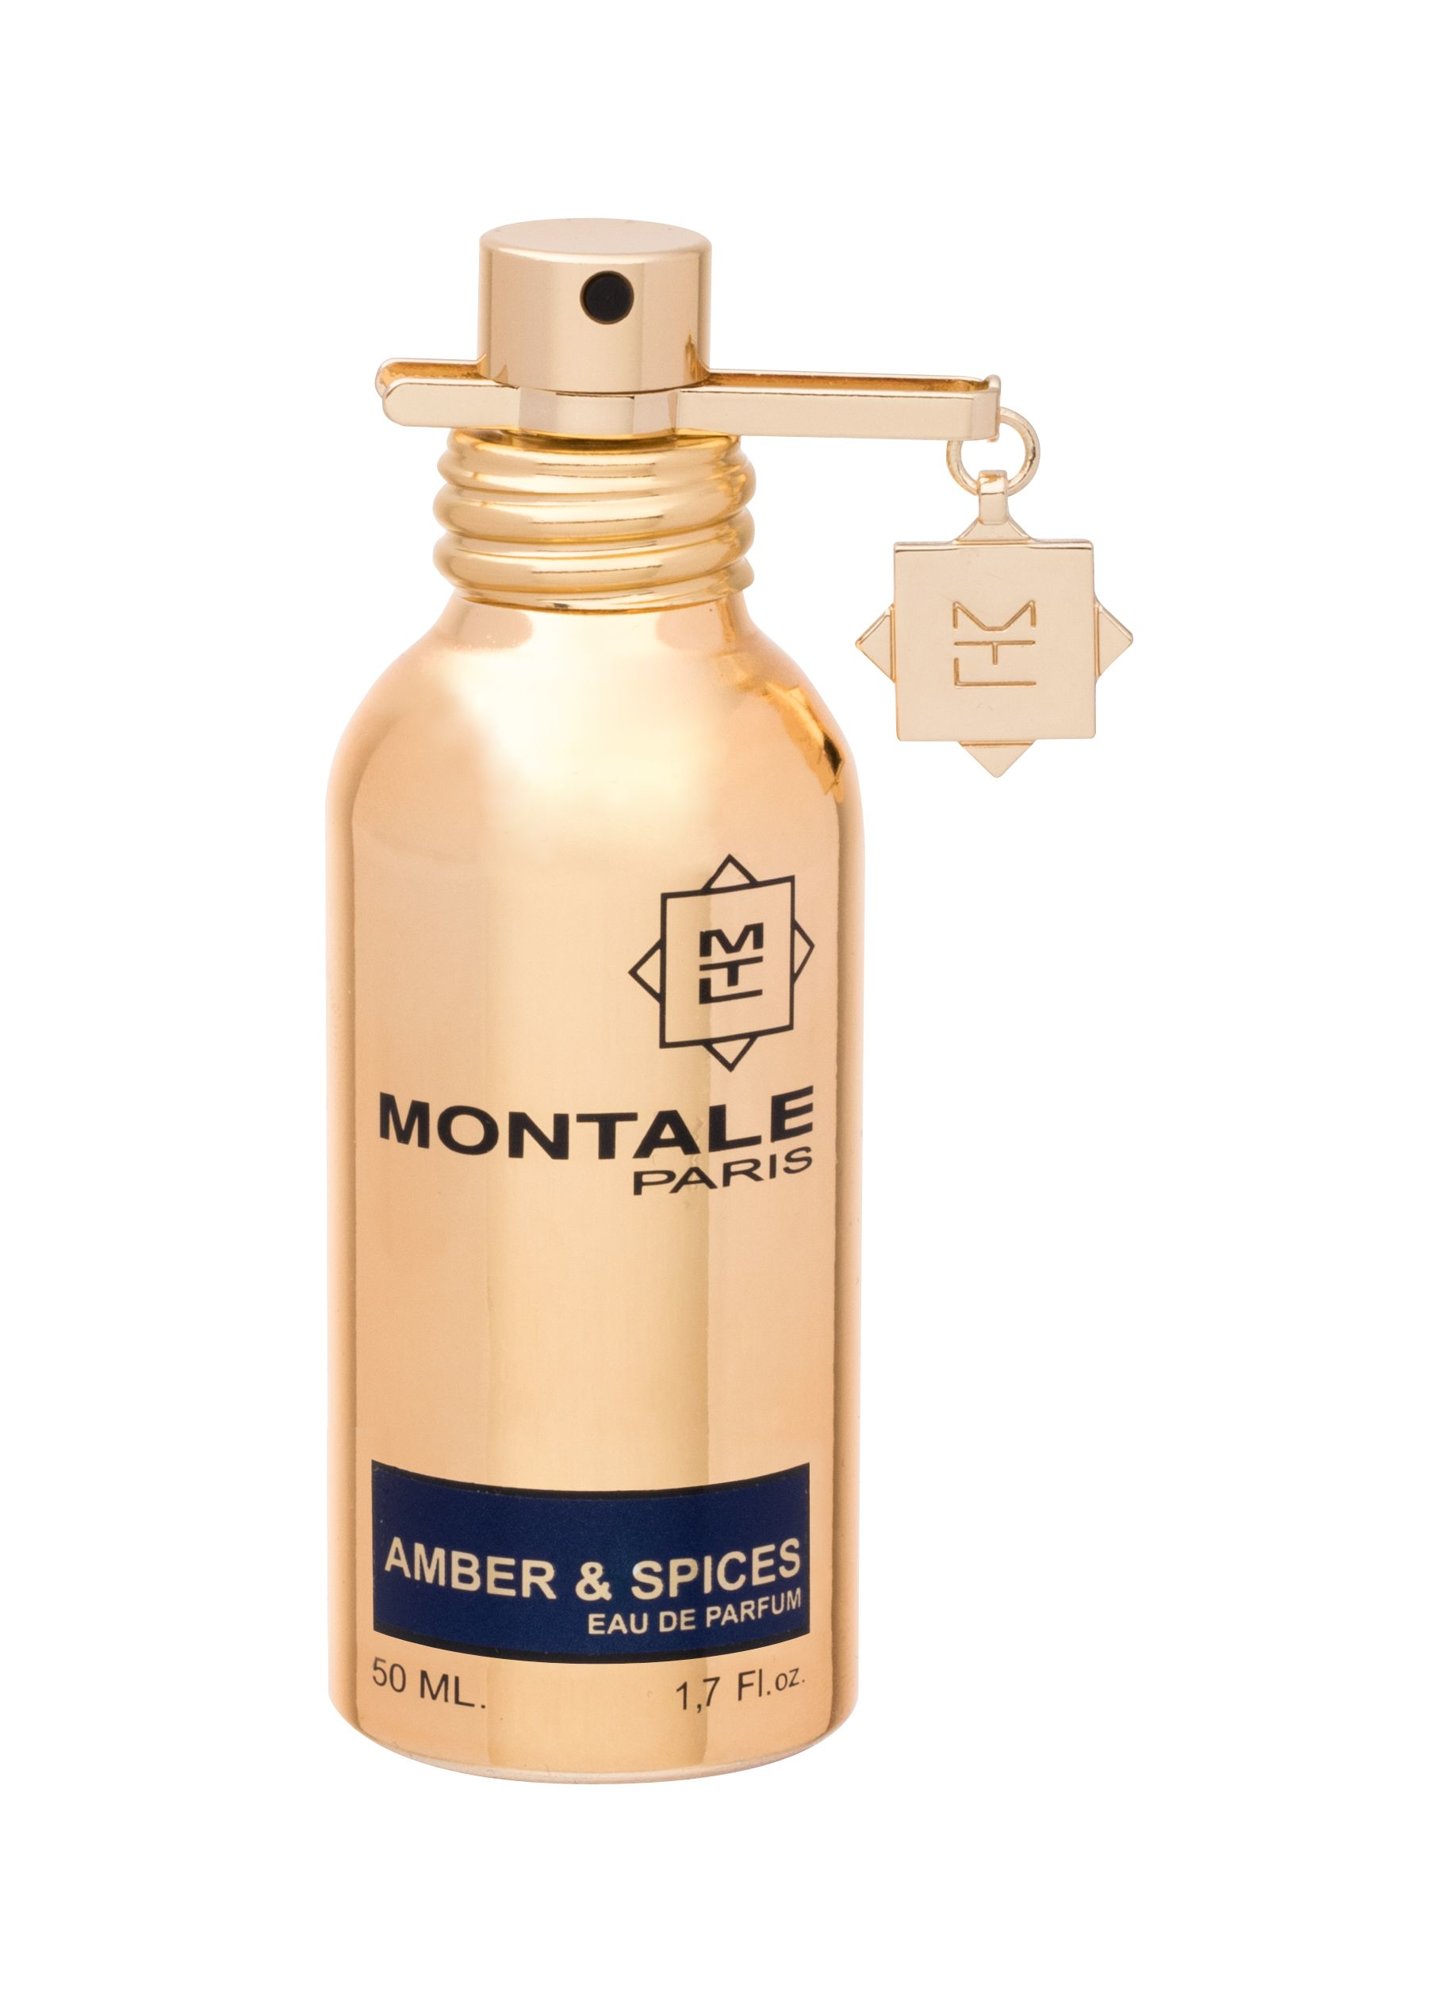 Montale Paris Amber&Spices 50ml NIŠINIAI Kvepalai Unisex EDP